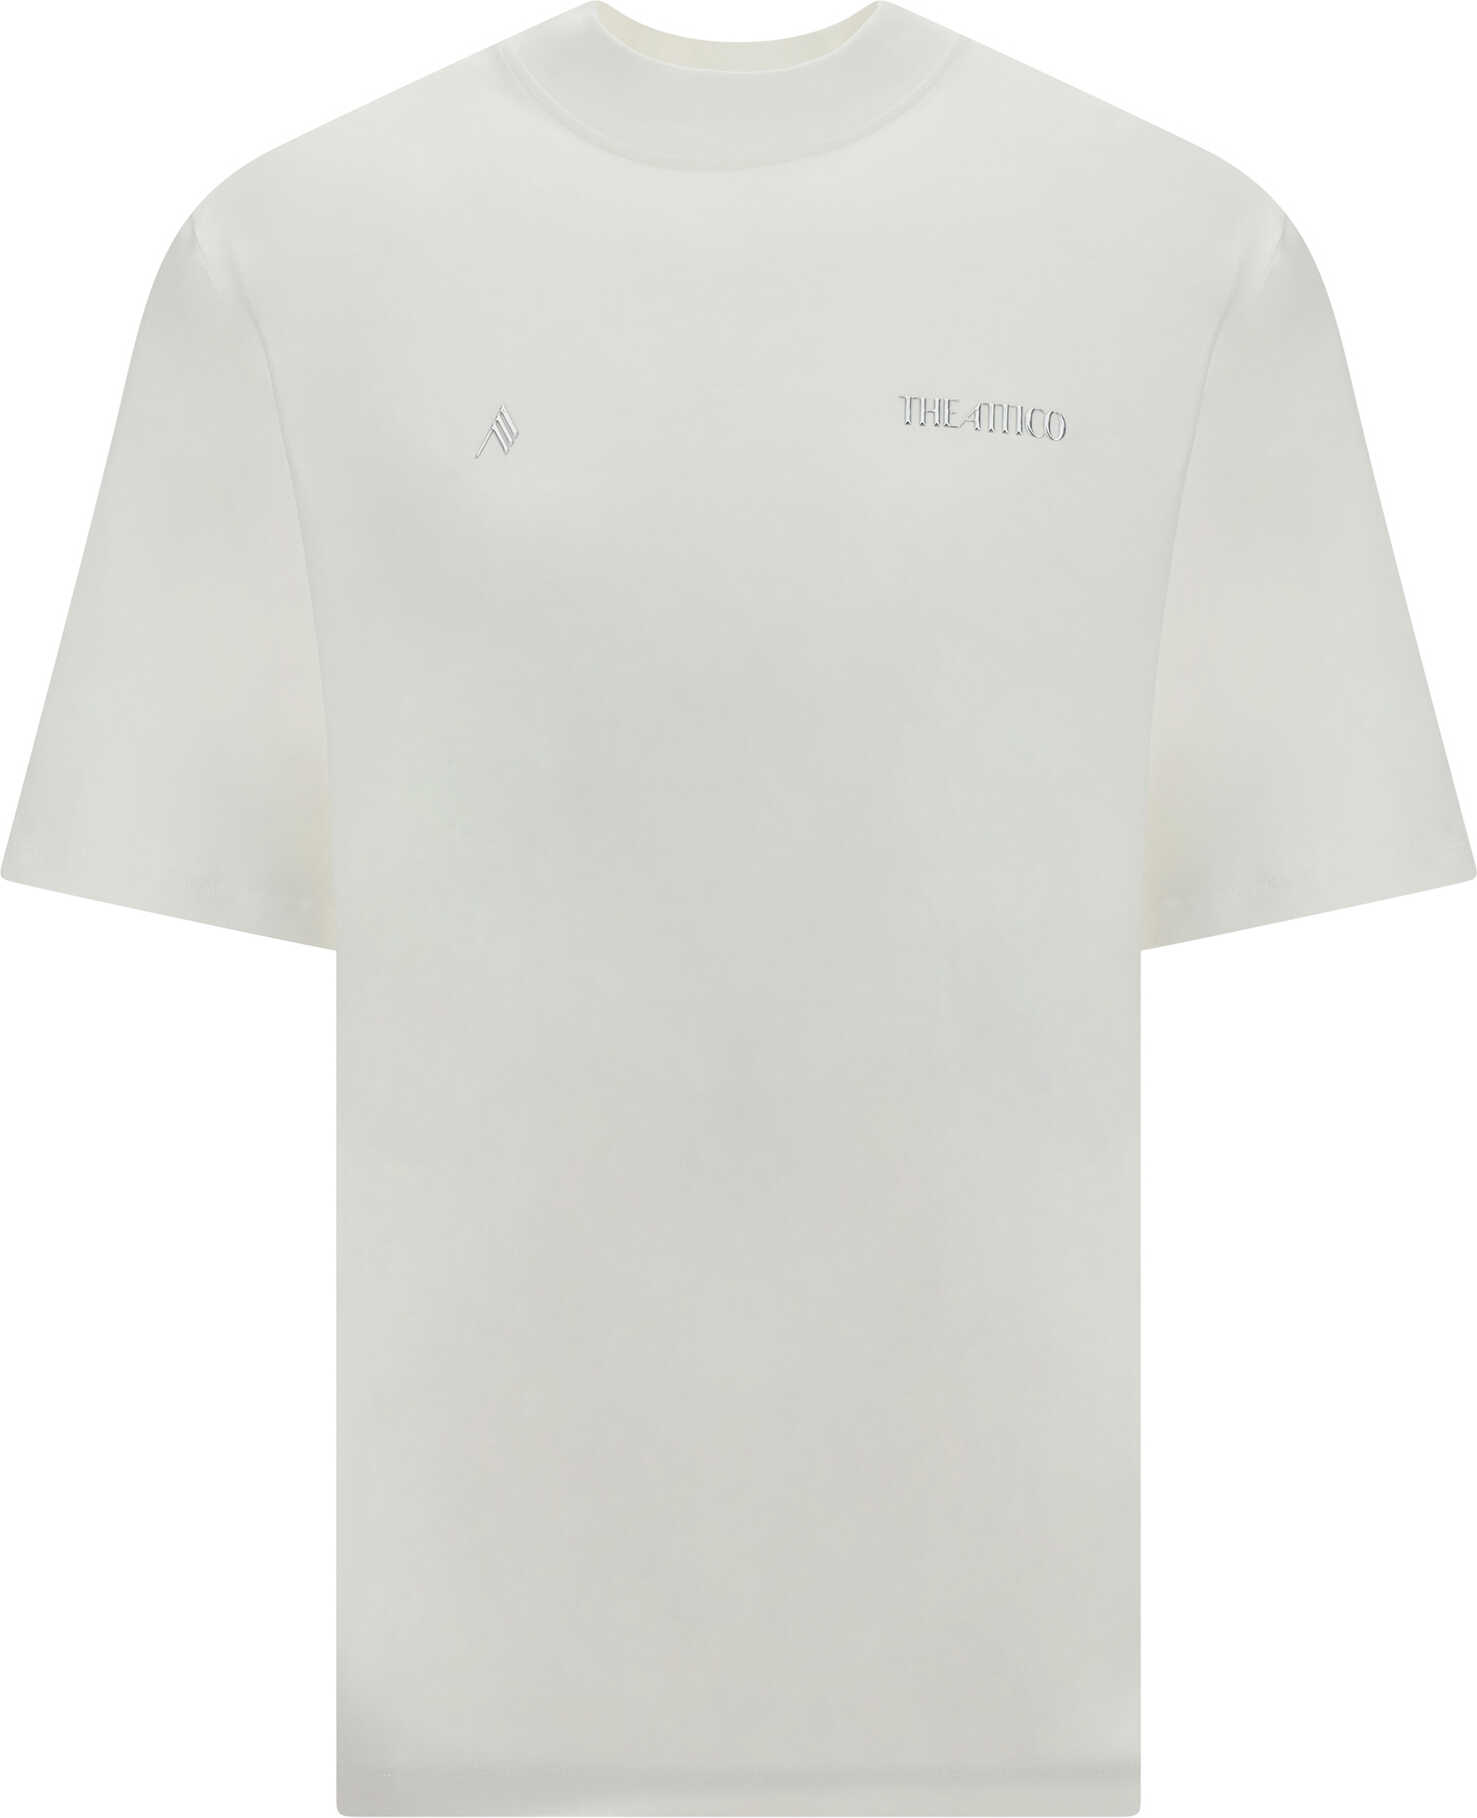 THE ATTICO Kilie T-Shirt White